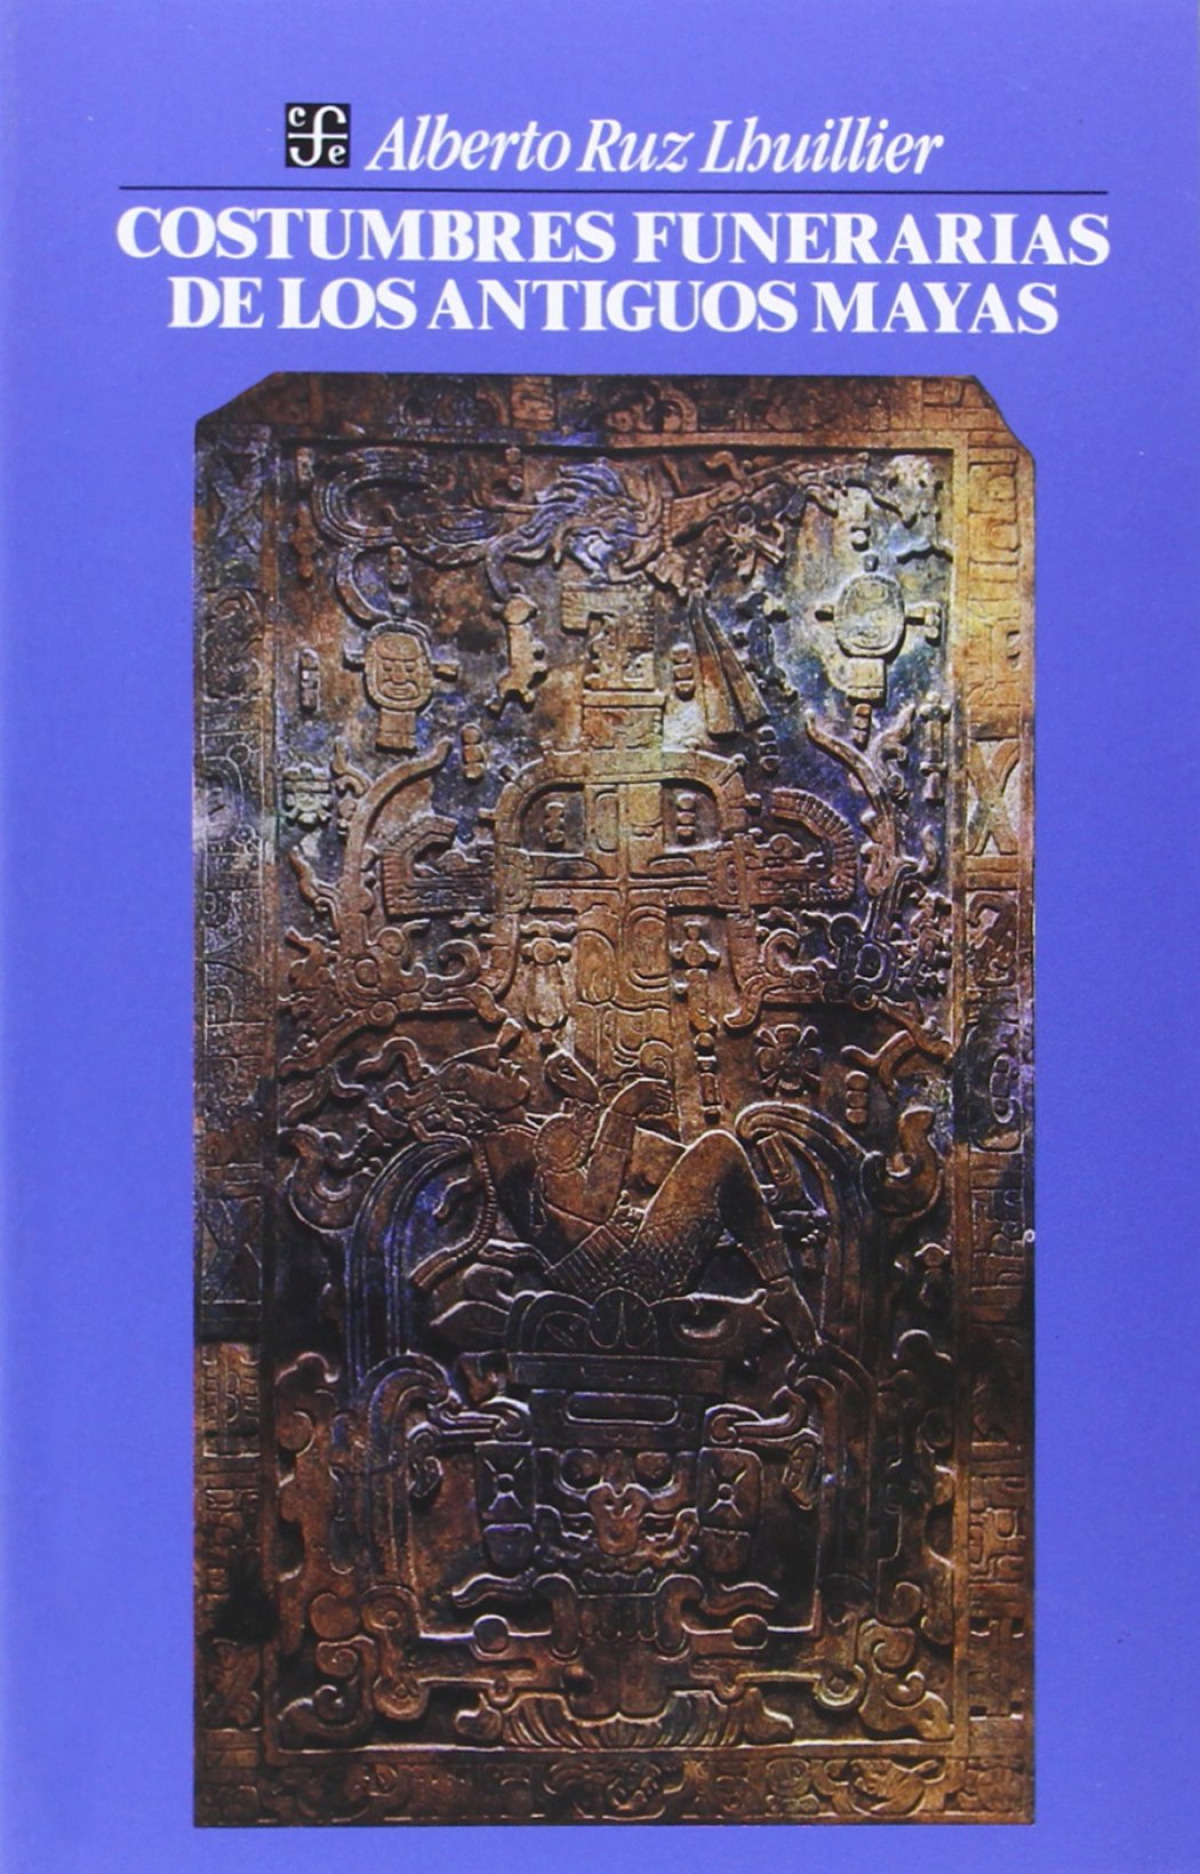 Costumbres funerarias de los antiguos mayas - Ruz Lhuillier, Alberto